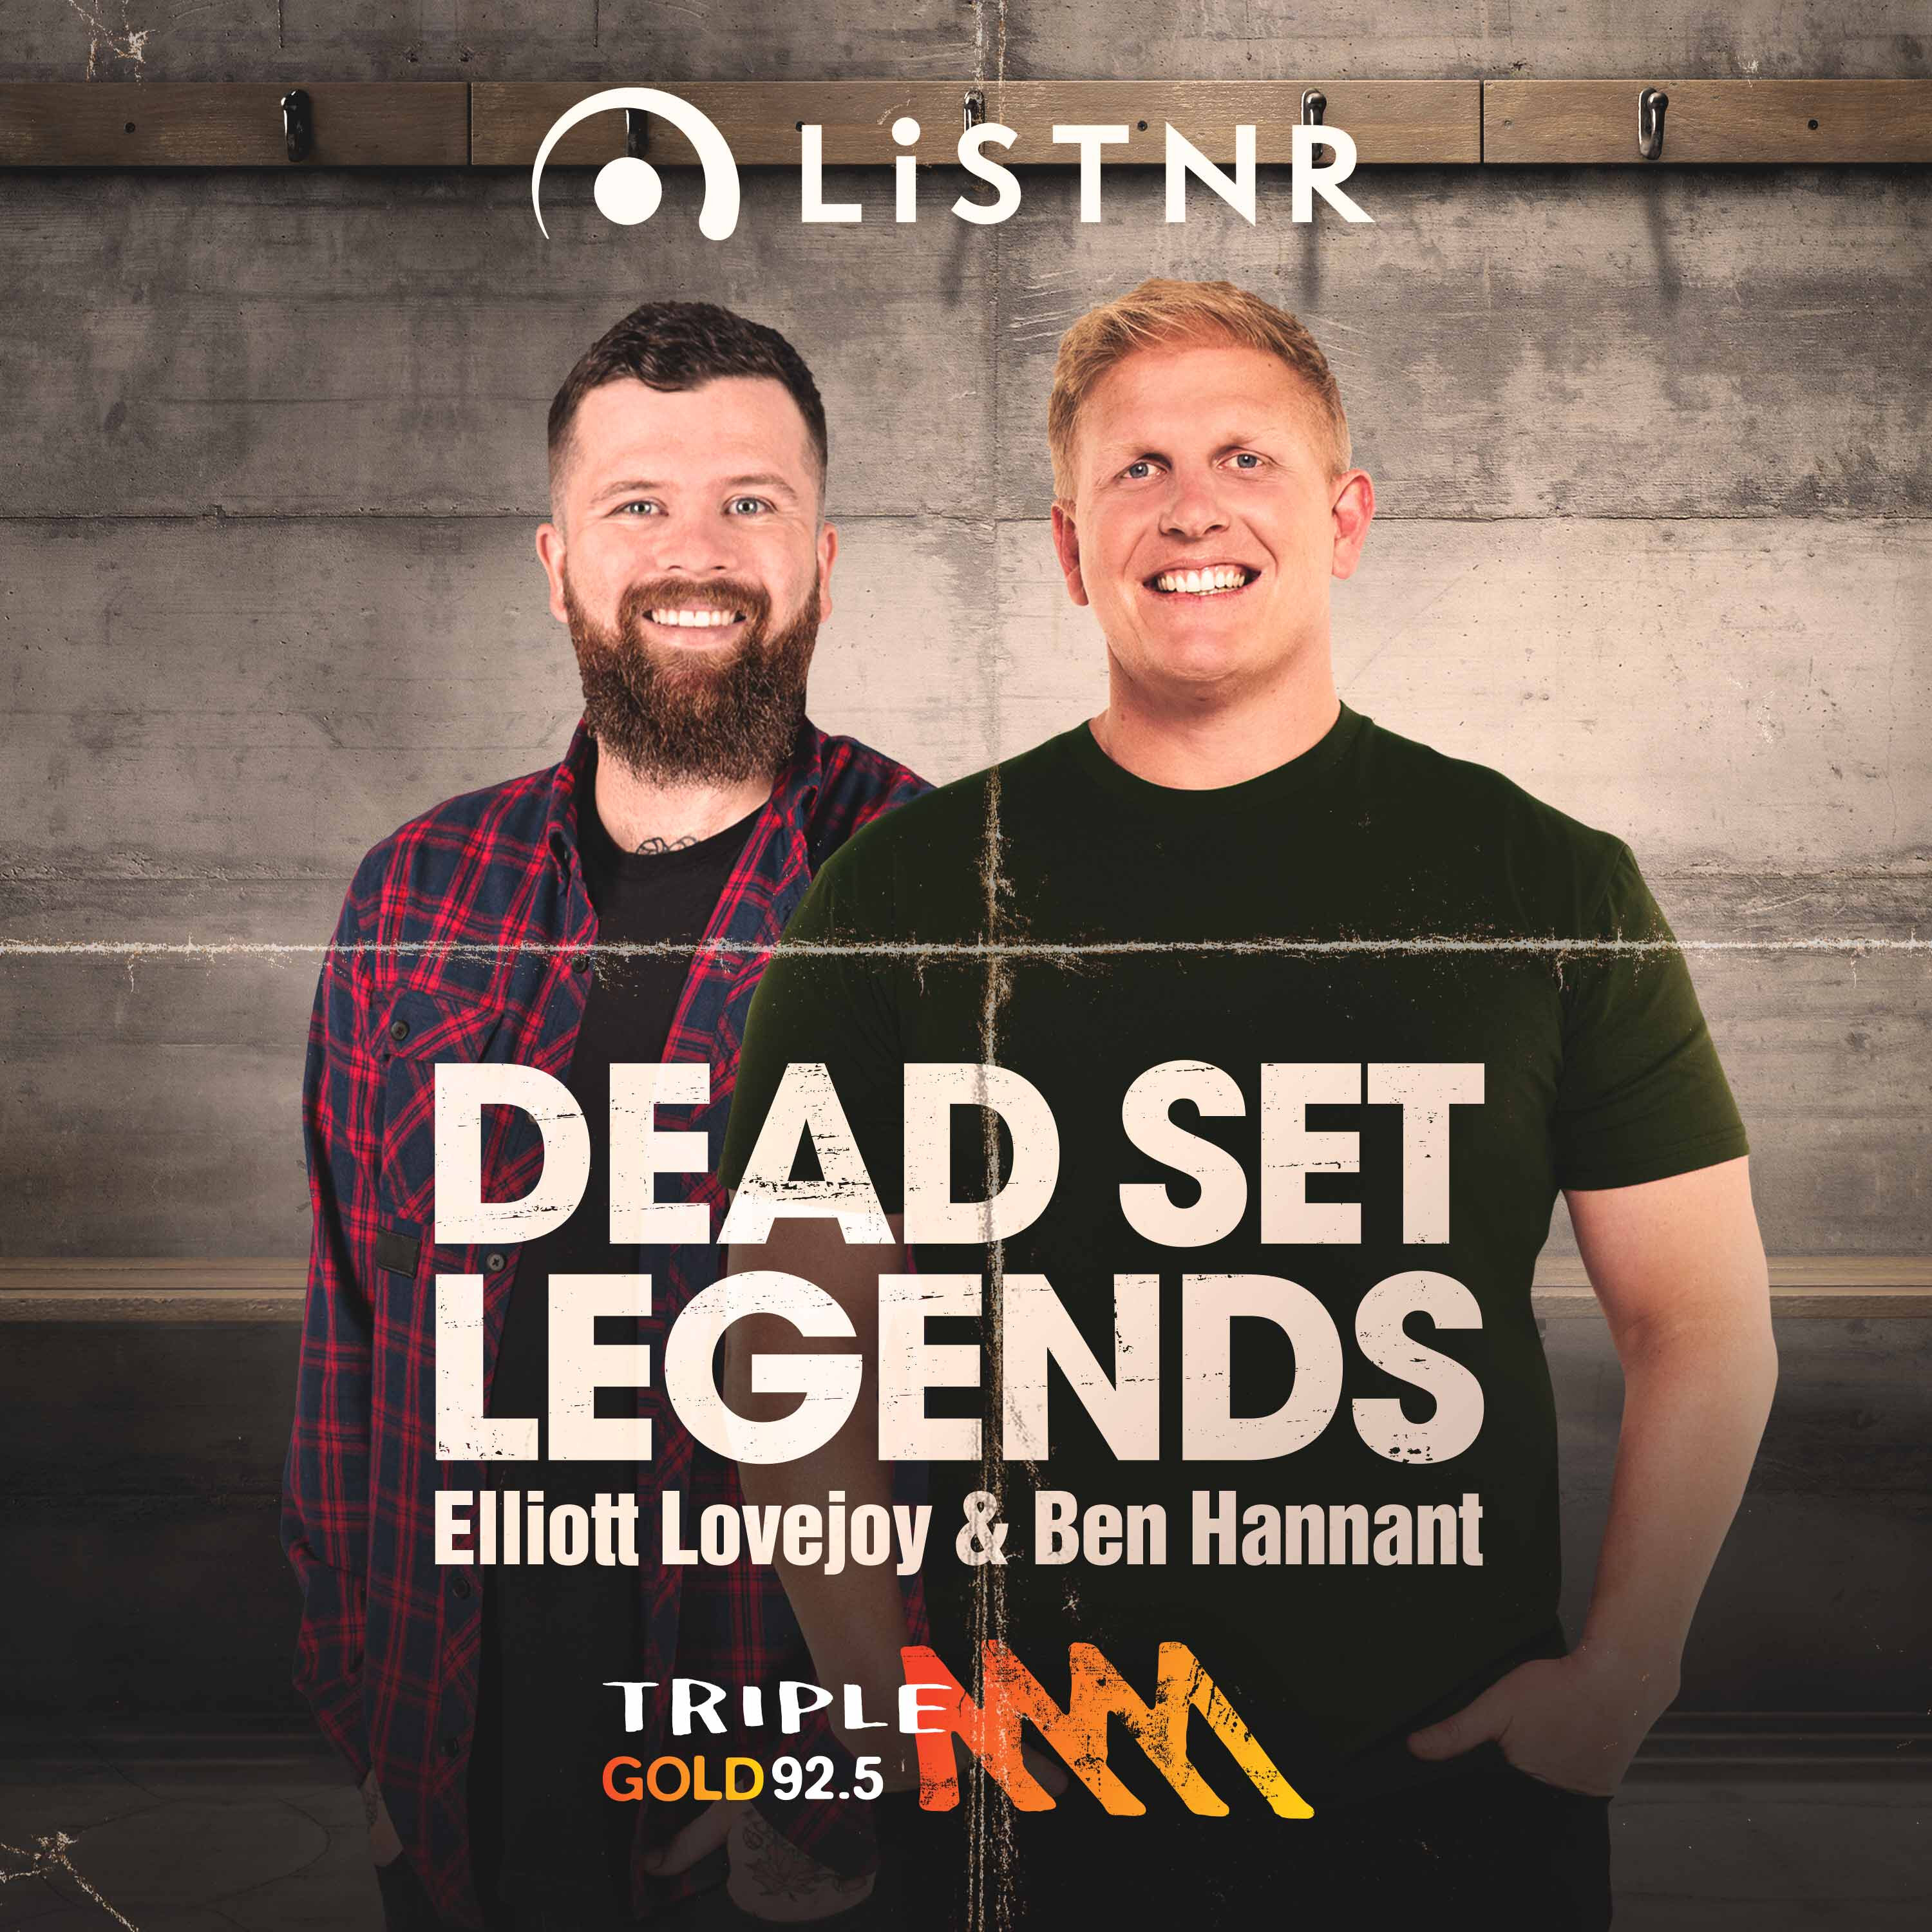 The Dead Set Legends Queensland